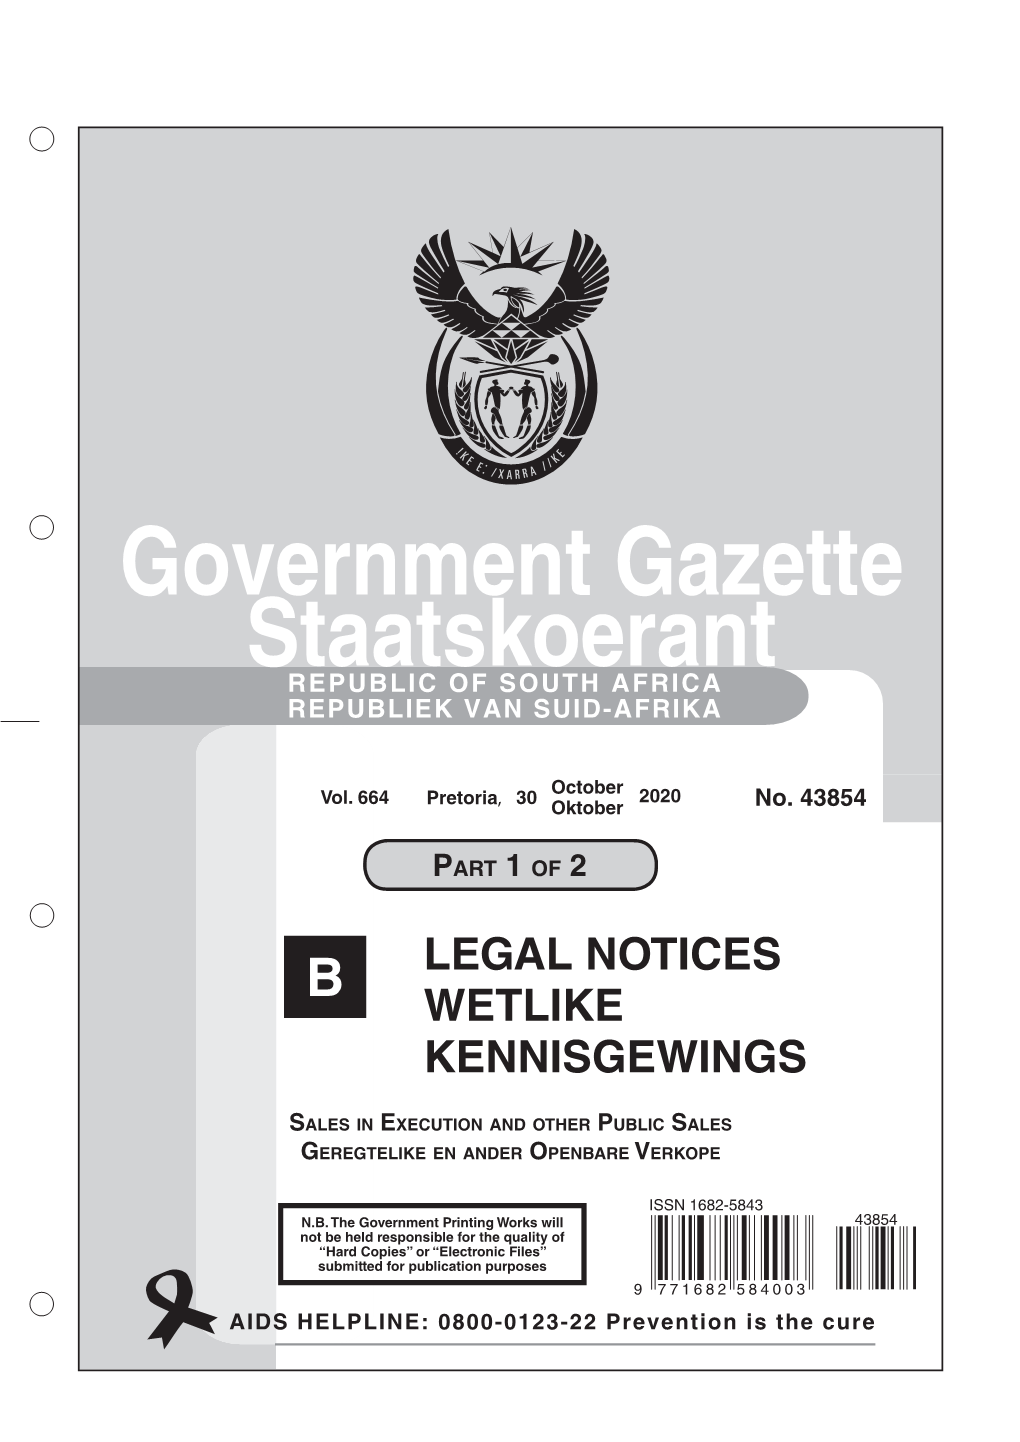 Government Gazette Staatskoerant REPUBLIC of SOUTH AFRICA REPUBLIEK VAN SUID-AFRIKA B LEGAL NOTICES WETLIKE KENNISGEWINGS